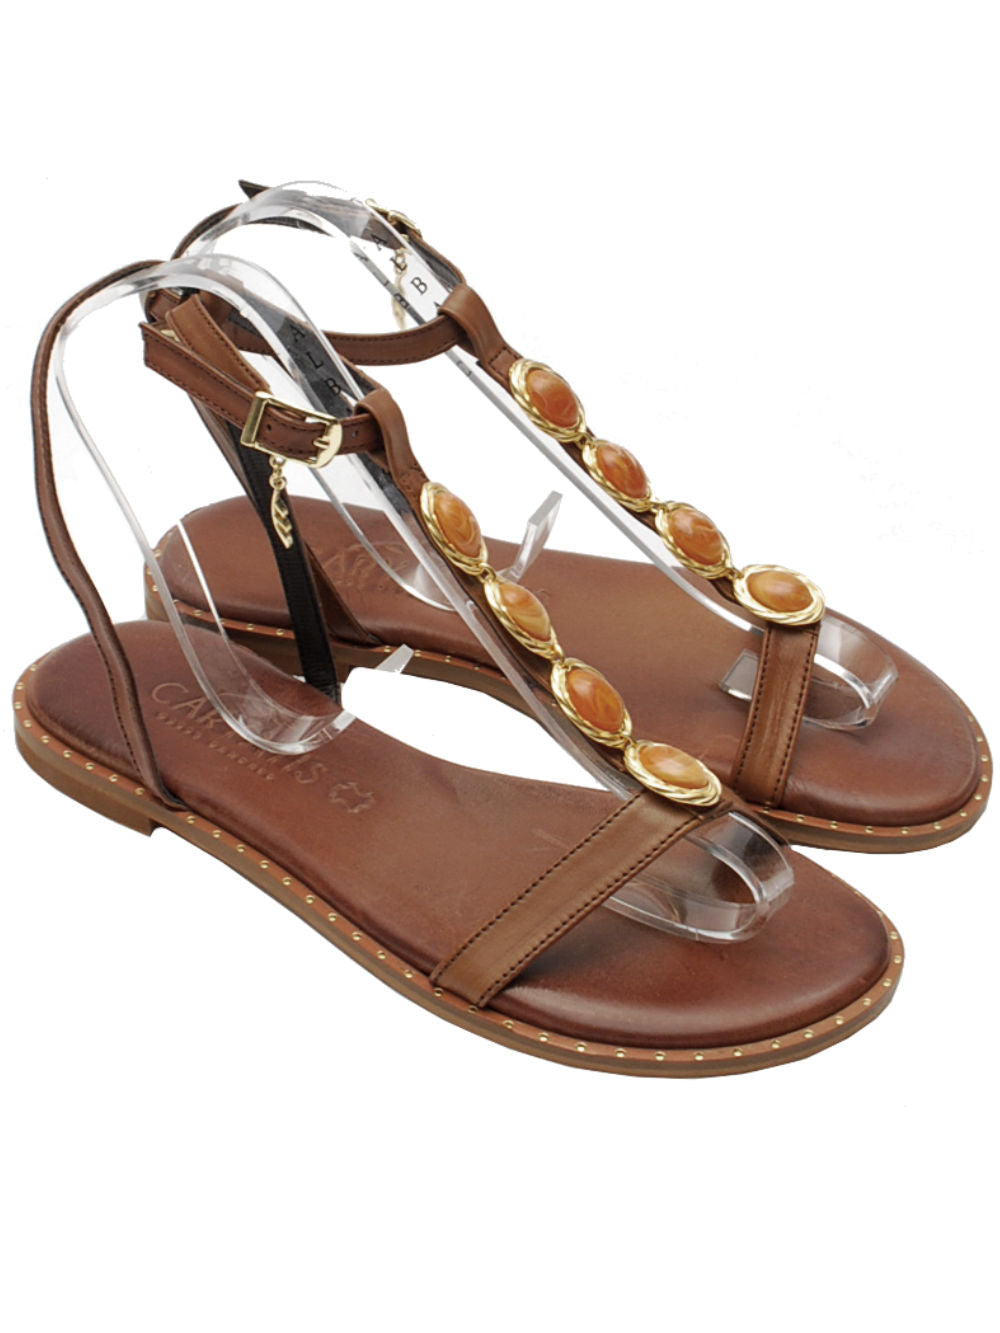 Caryatis sandalo accessori 621722 brown gold pe24